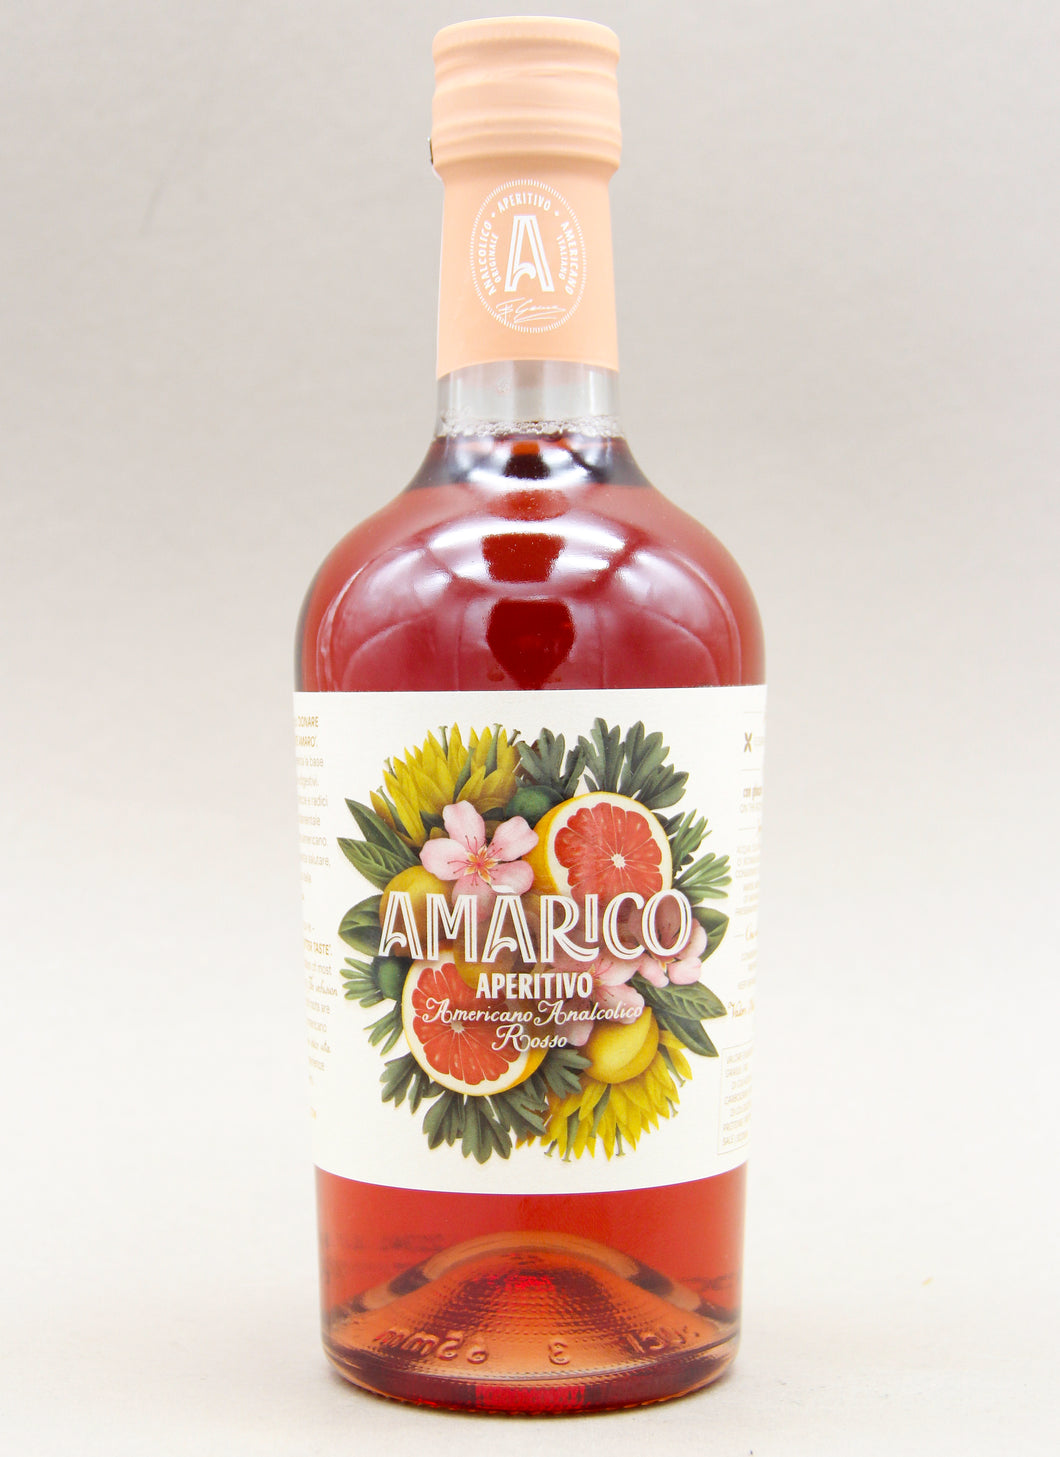 Amarico Aperitivo Rosso, Non-alcoholic Americano, Italy (0%, 50cl)